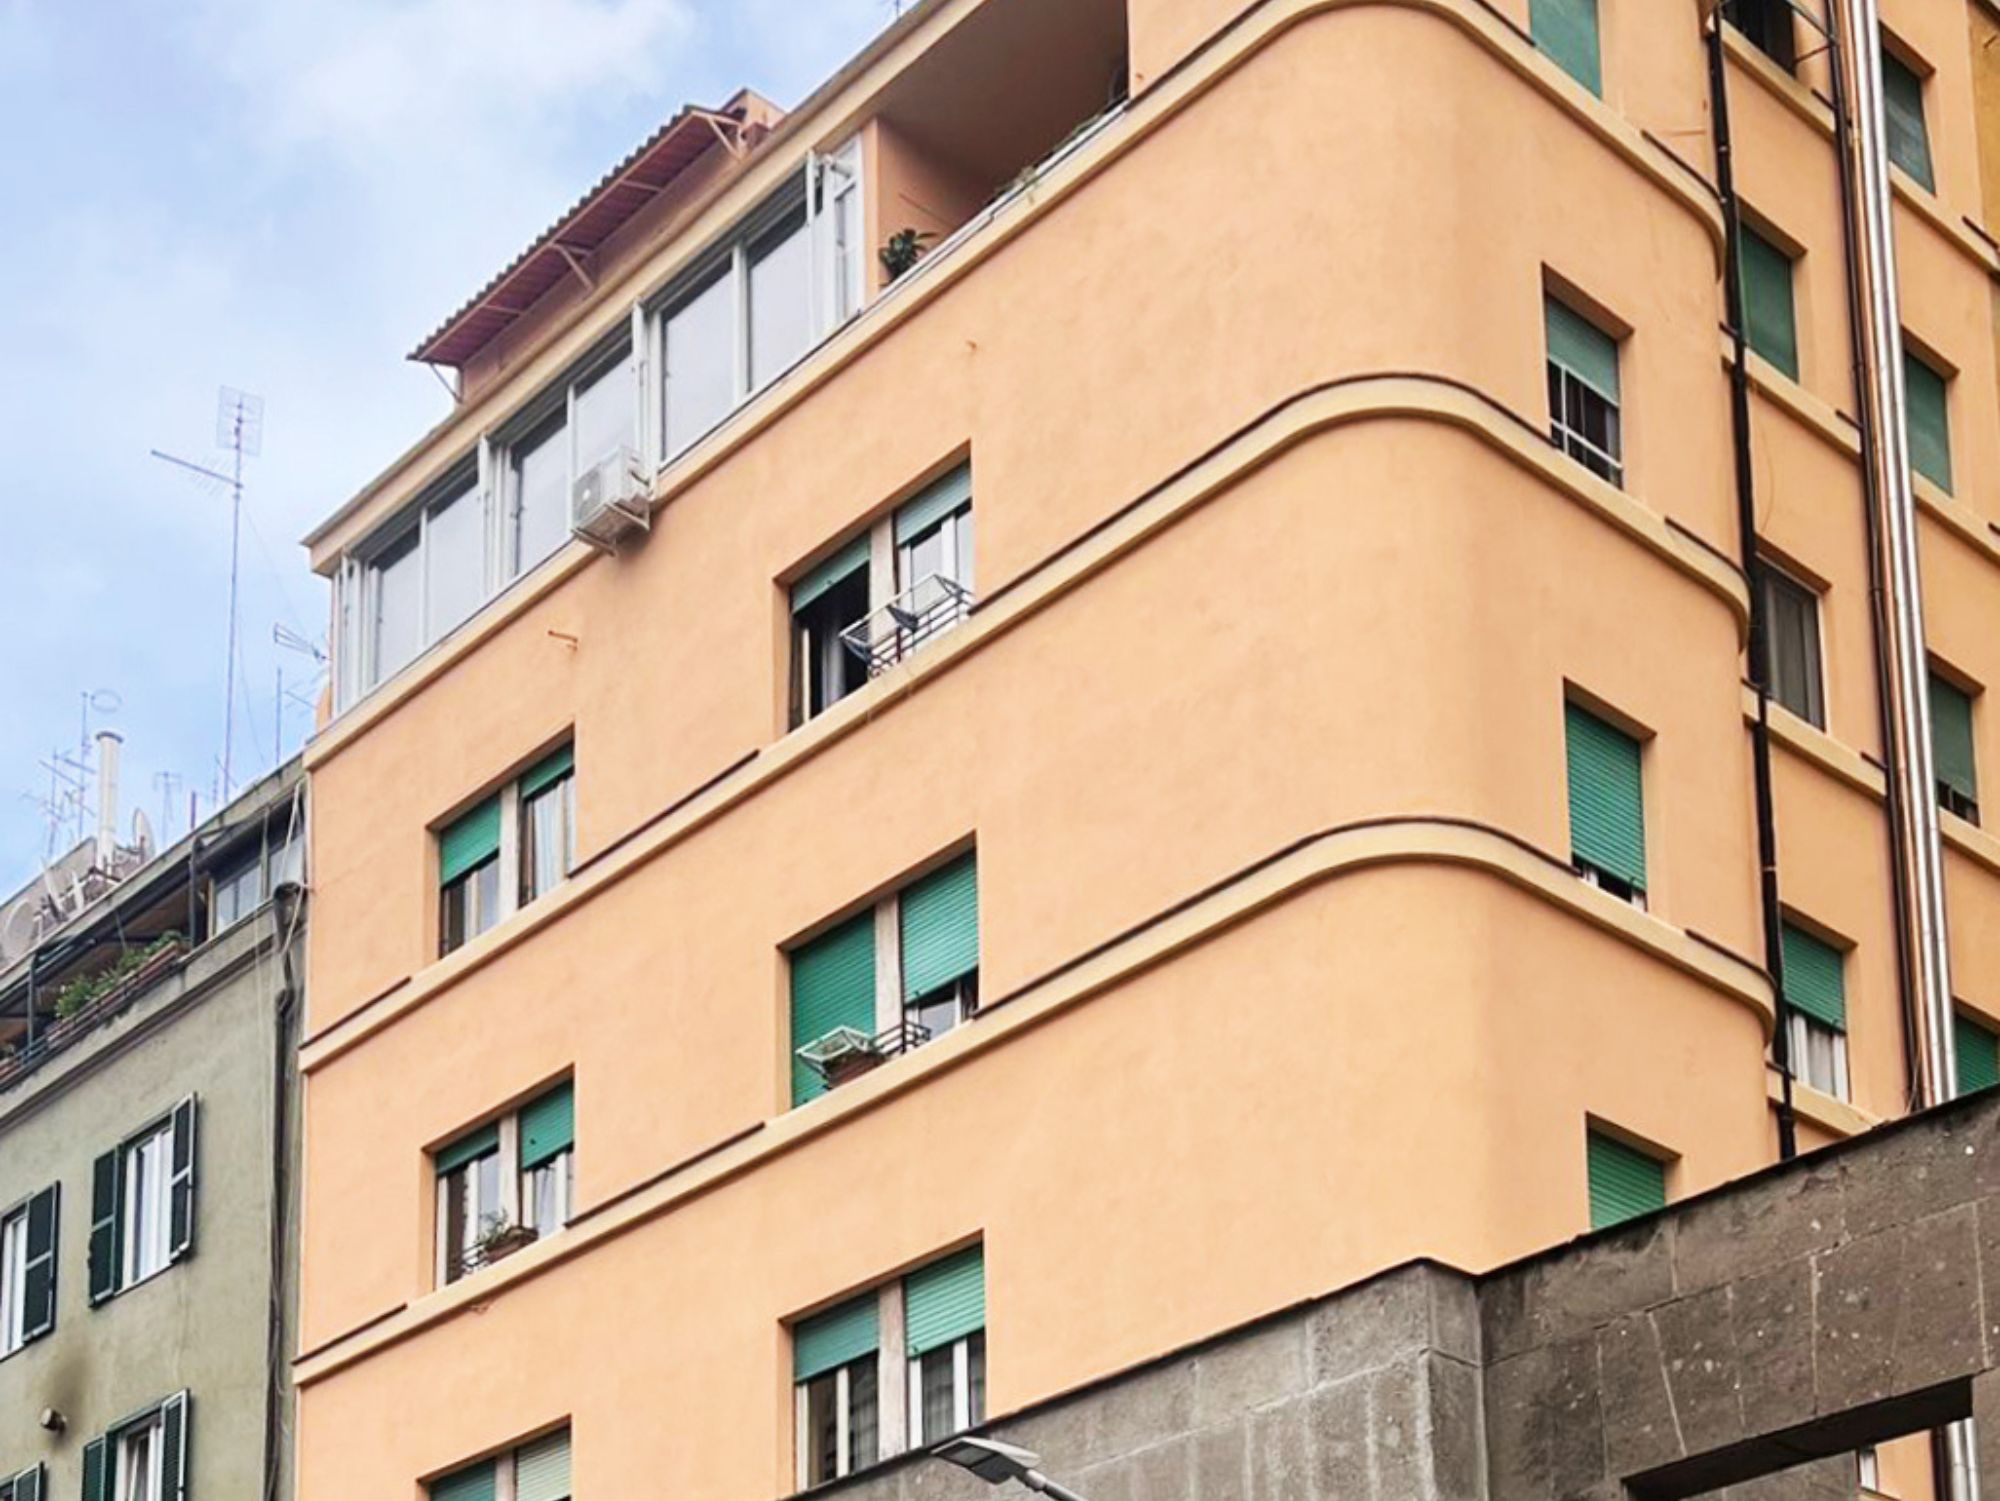 Condominio Via Orazio Coclite, Roma - Intervento di ristrutturazione della facciata